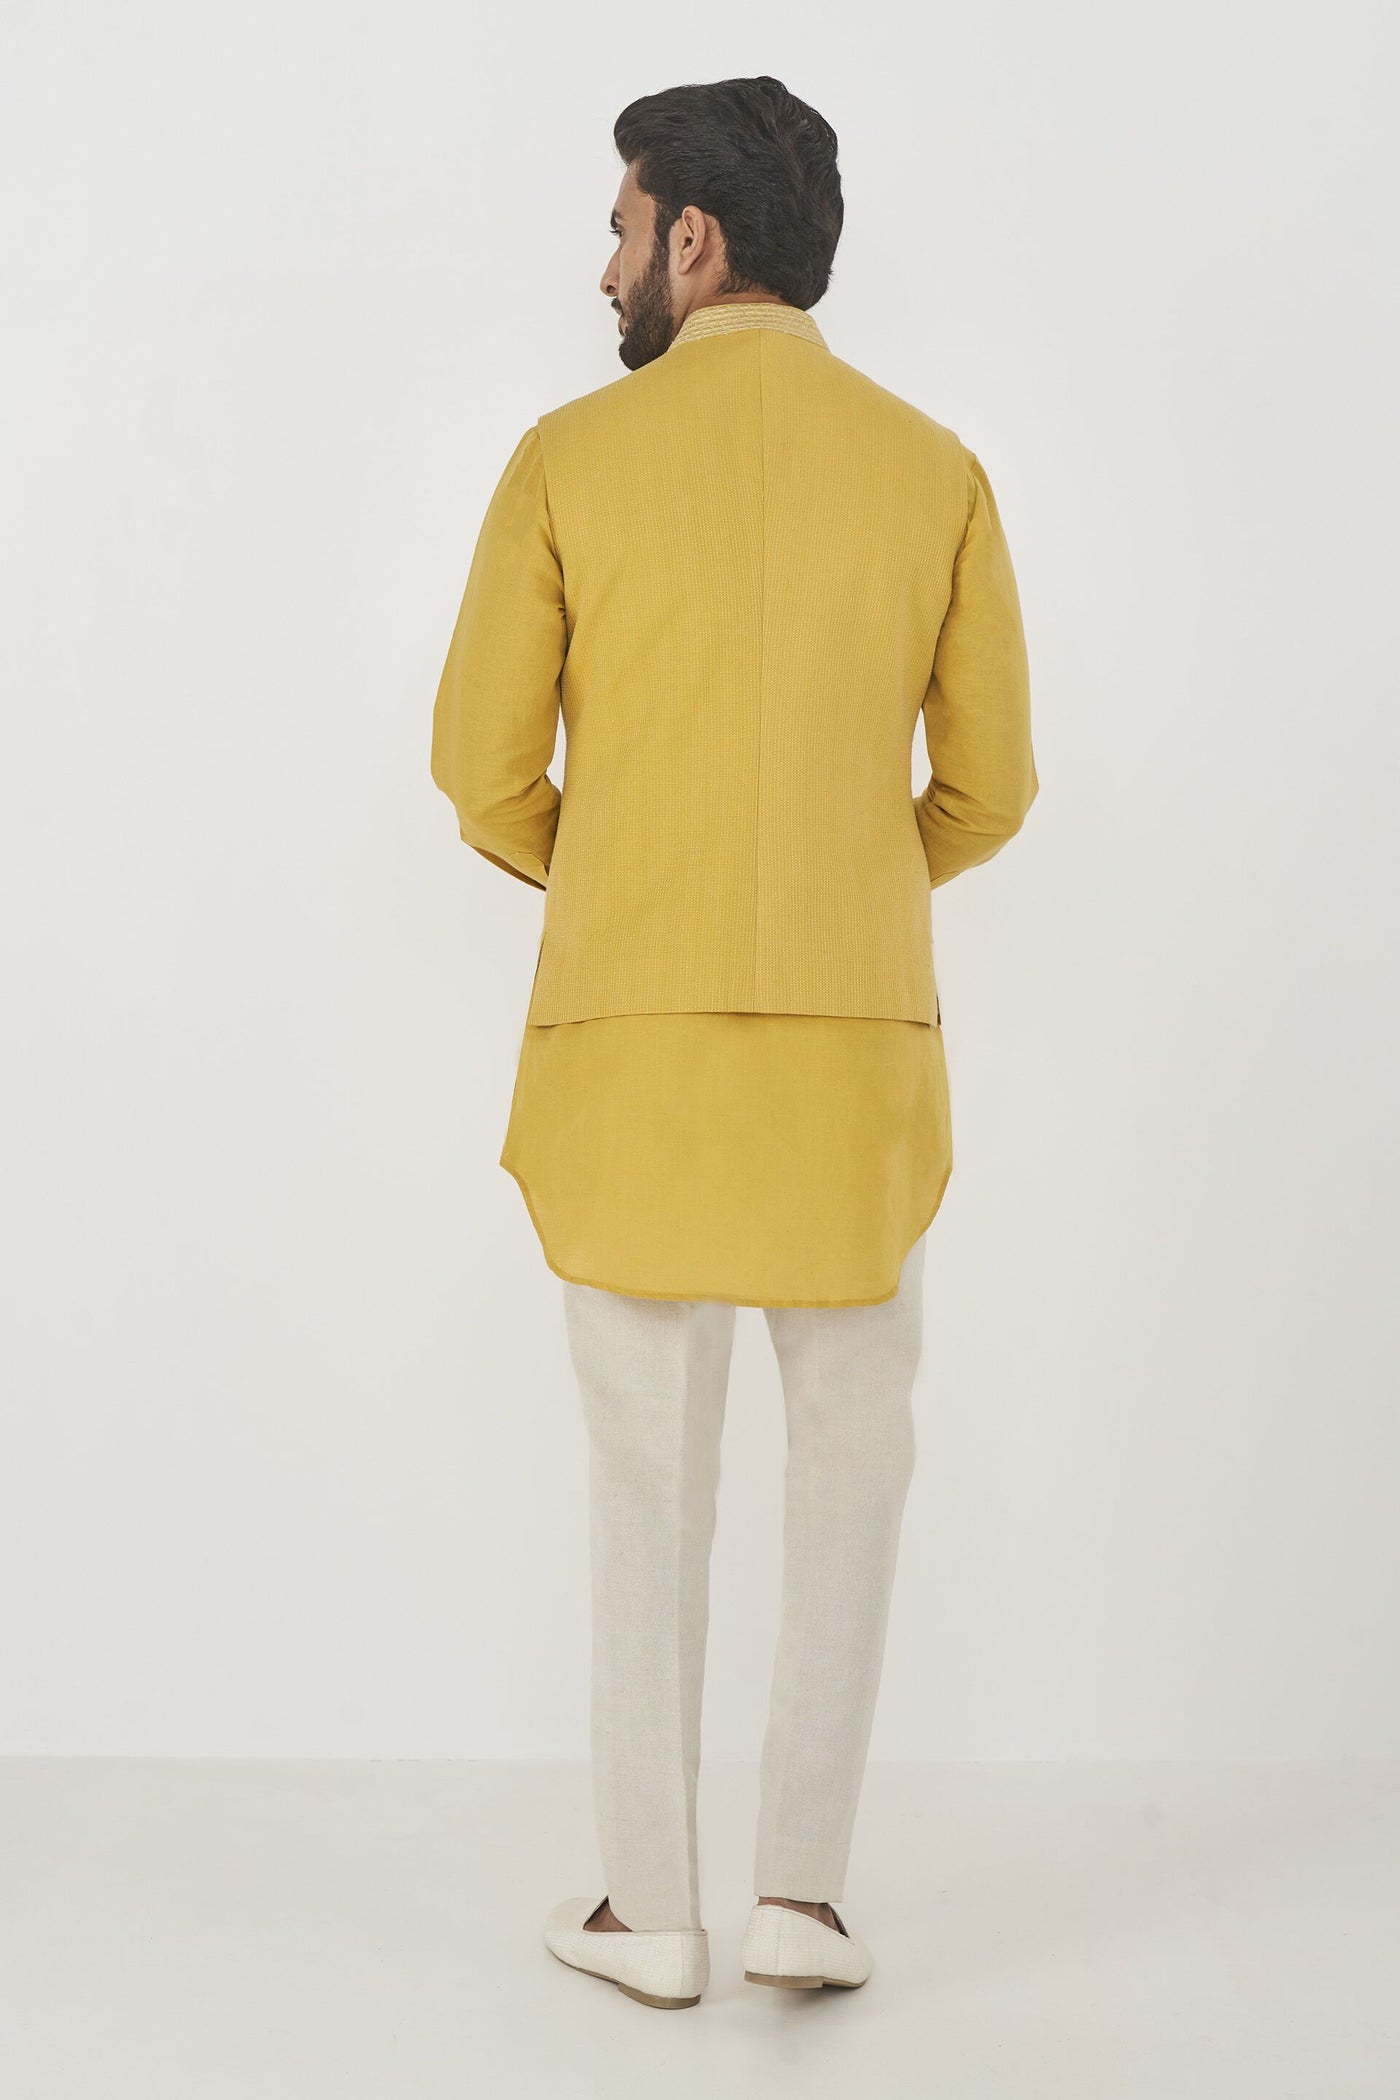  Anita Dongre menswear Aadam Bandi Yellow indian designer wear online shopping melange singapore